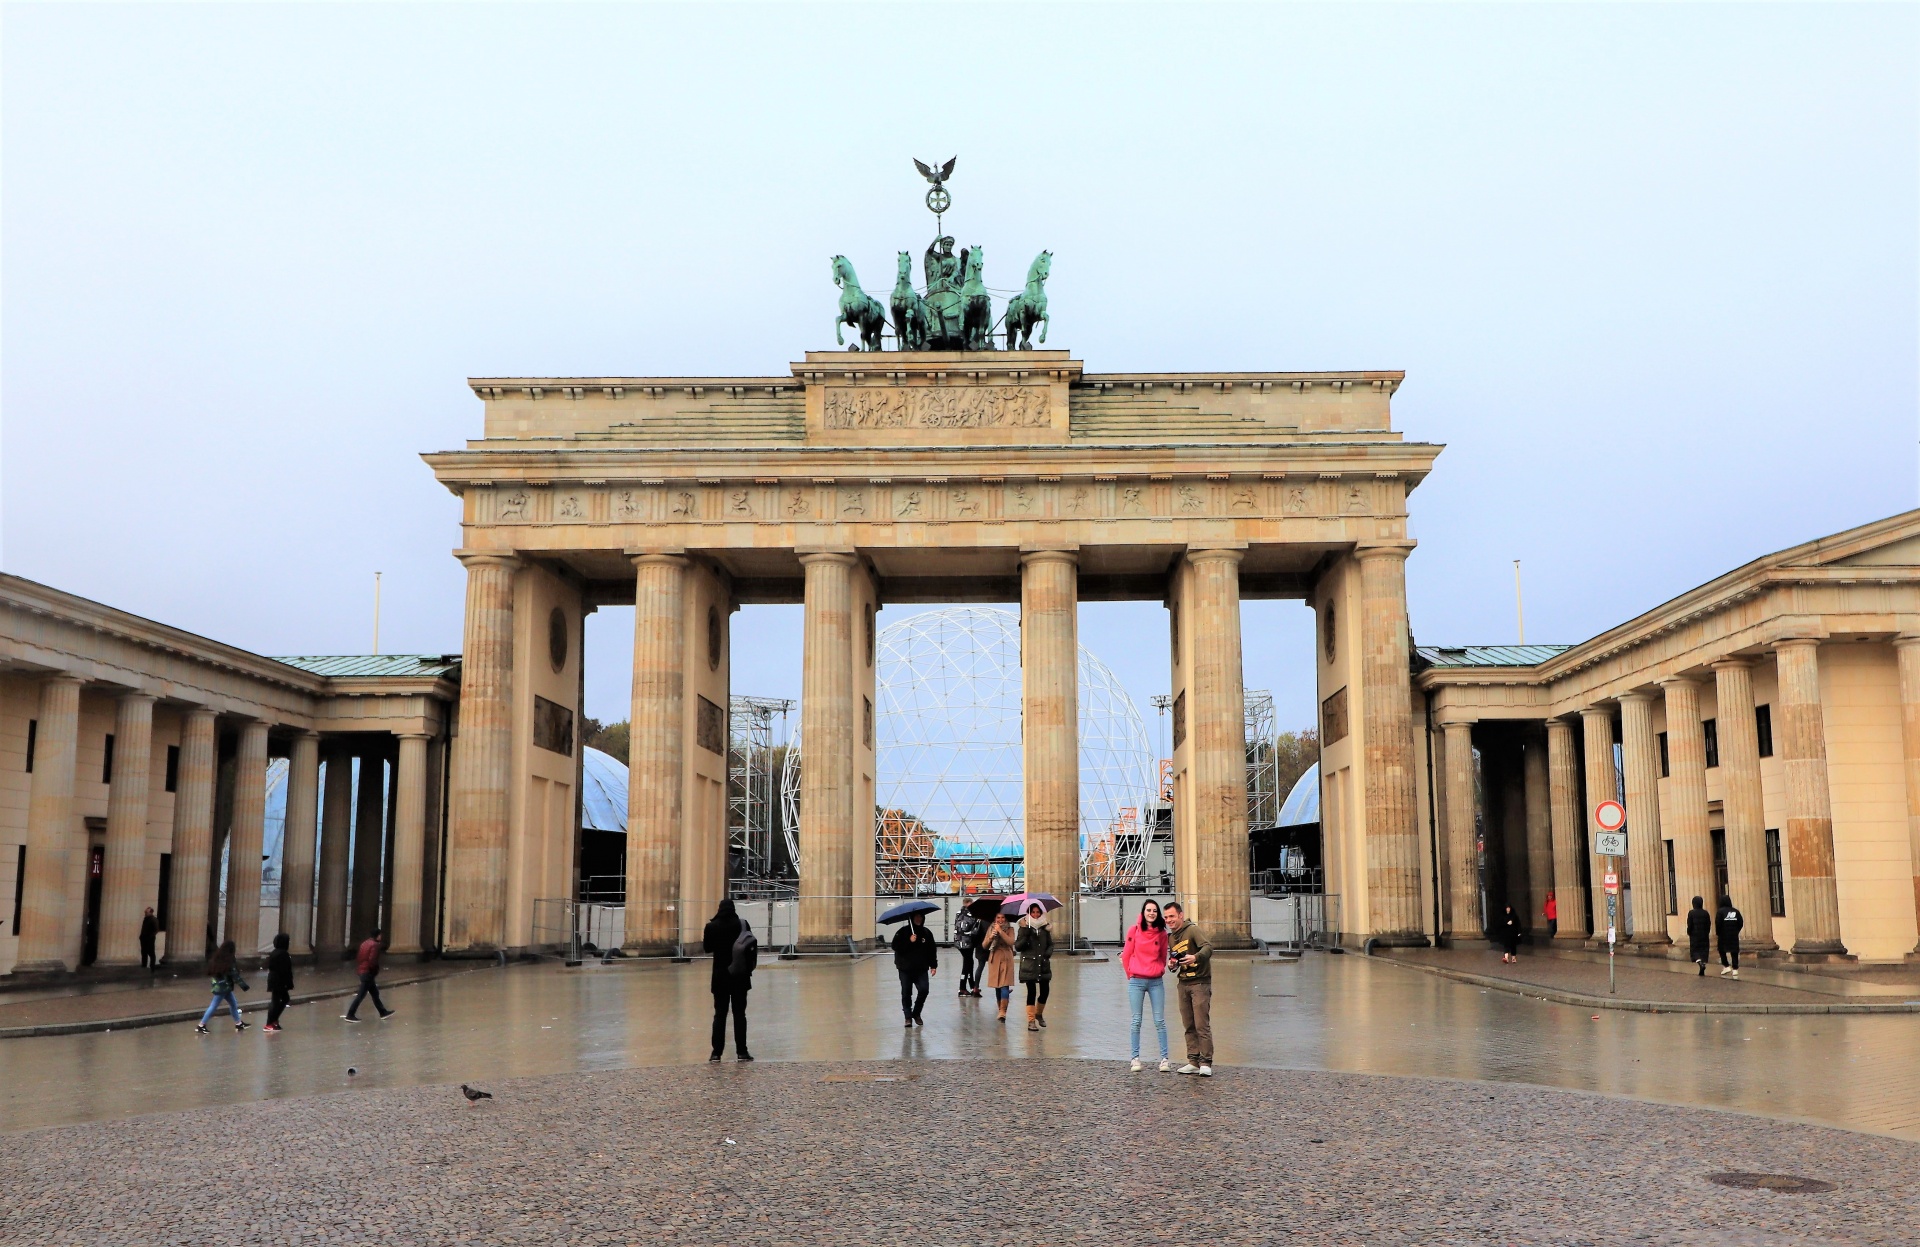 The Brandenburg Gate in Berlin, Germany.